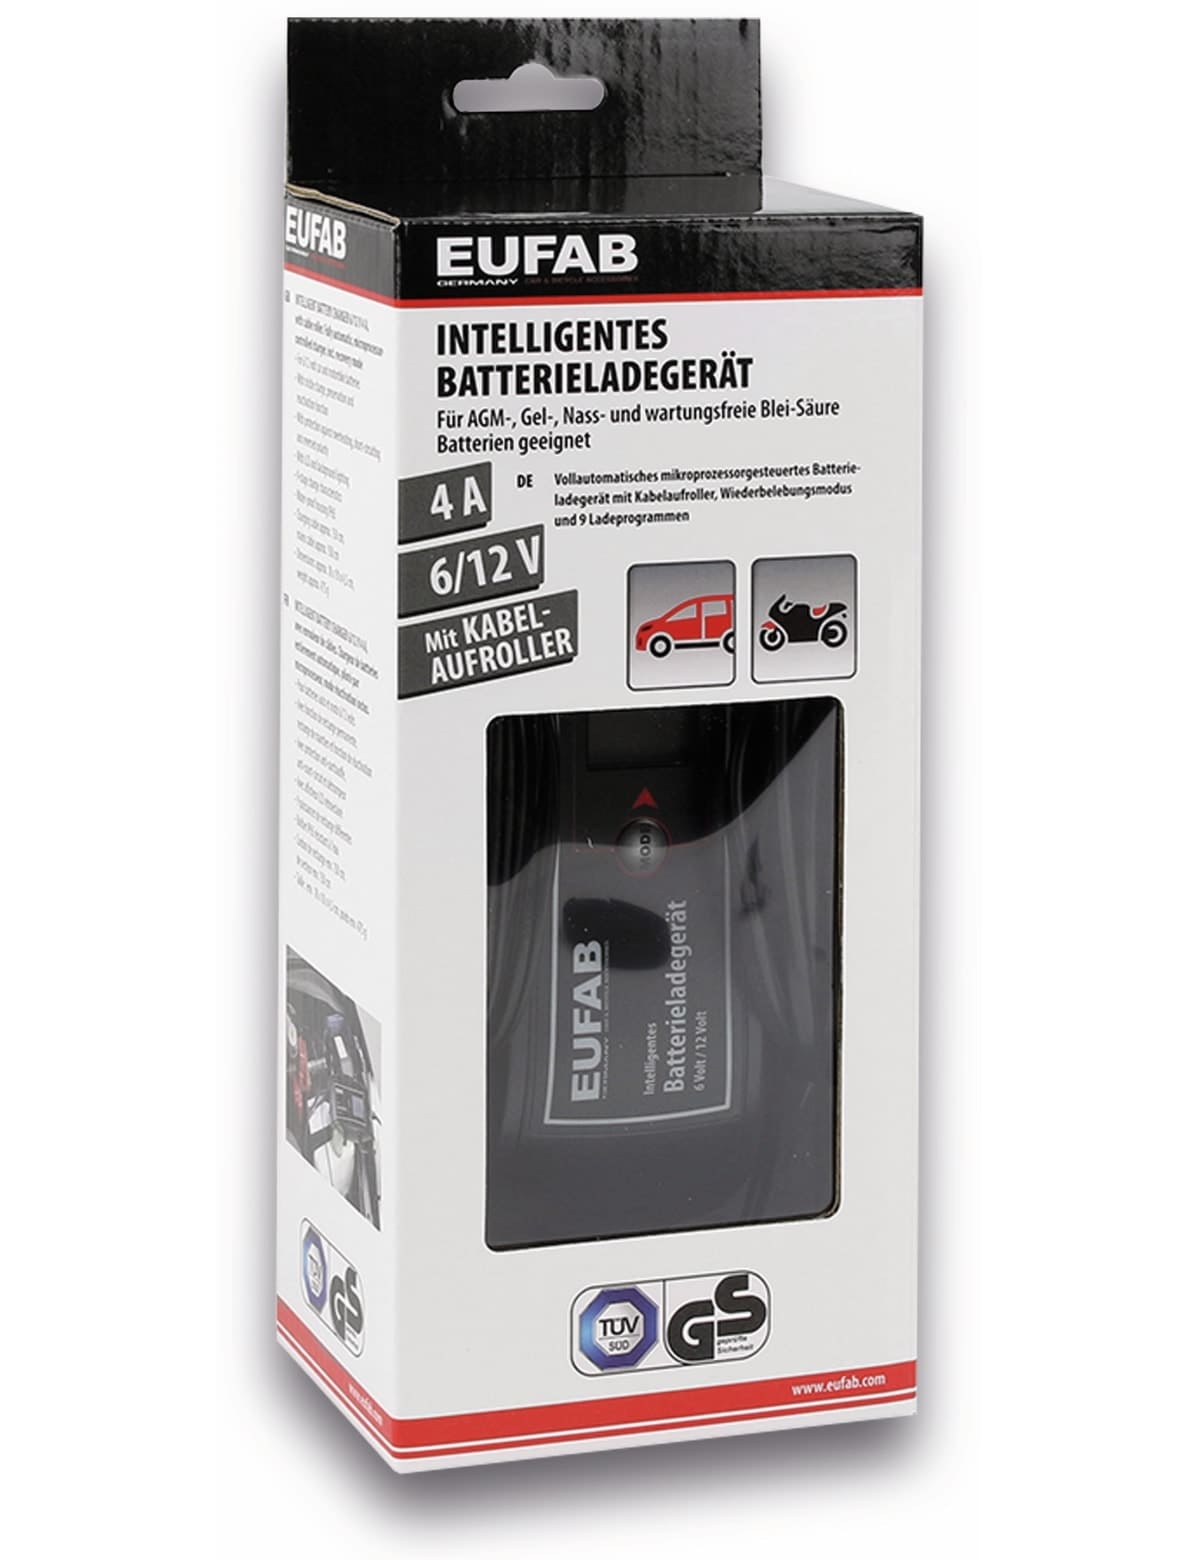 EUFAB Batterie-Ladegerät 16616, 6/12V 4A